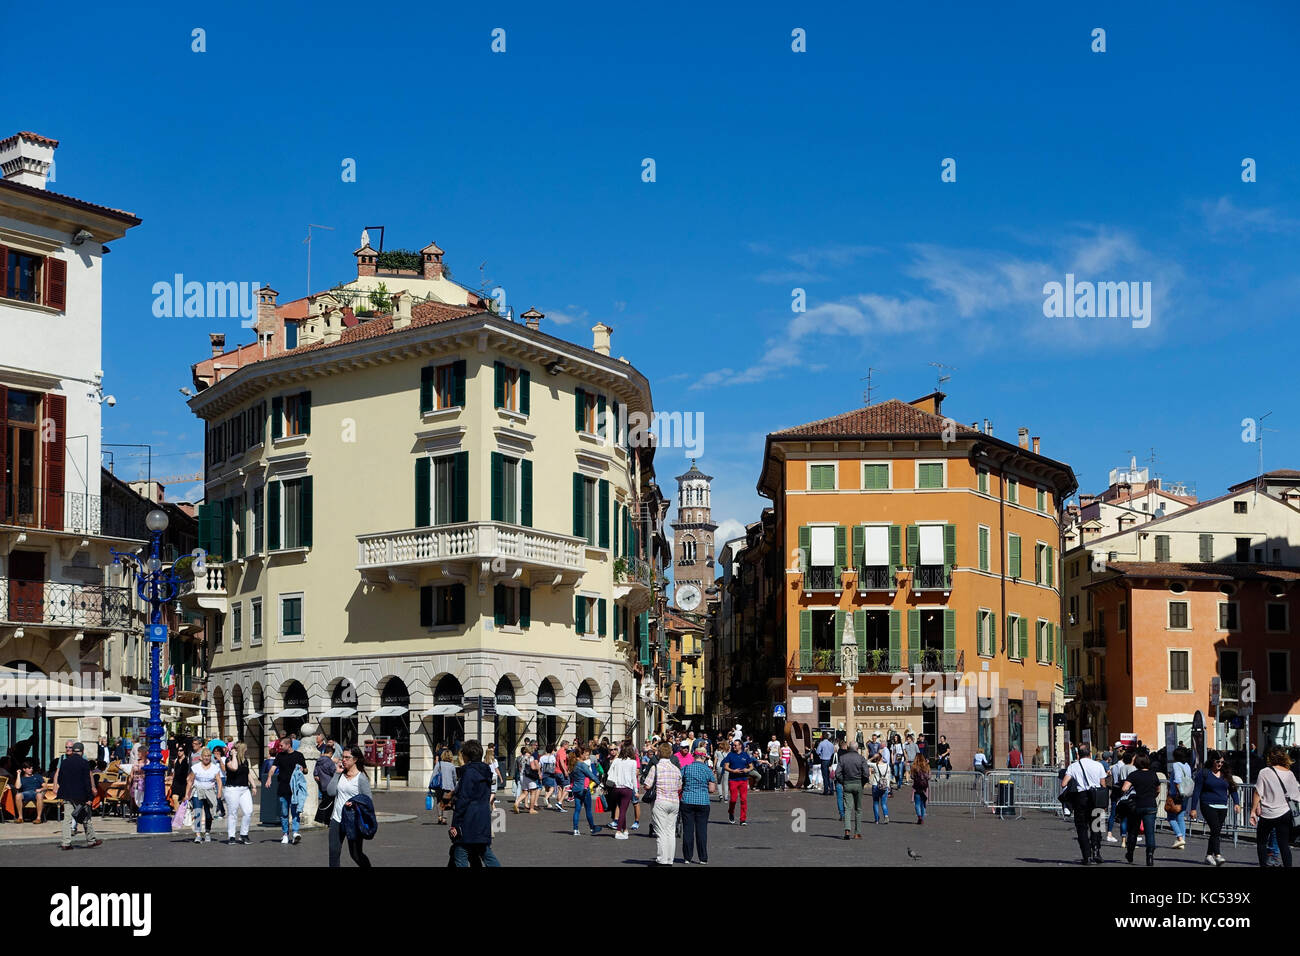 La piazza Bra, via Mazzini, rue commerçante, Vérone, Venise, Italie, Europe Banque D'Images